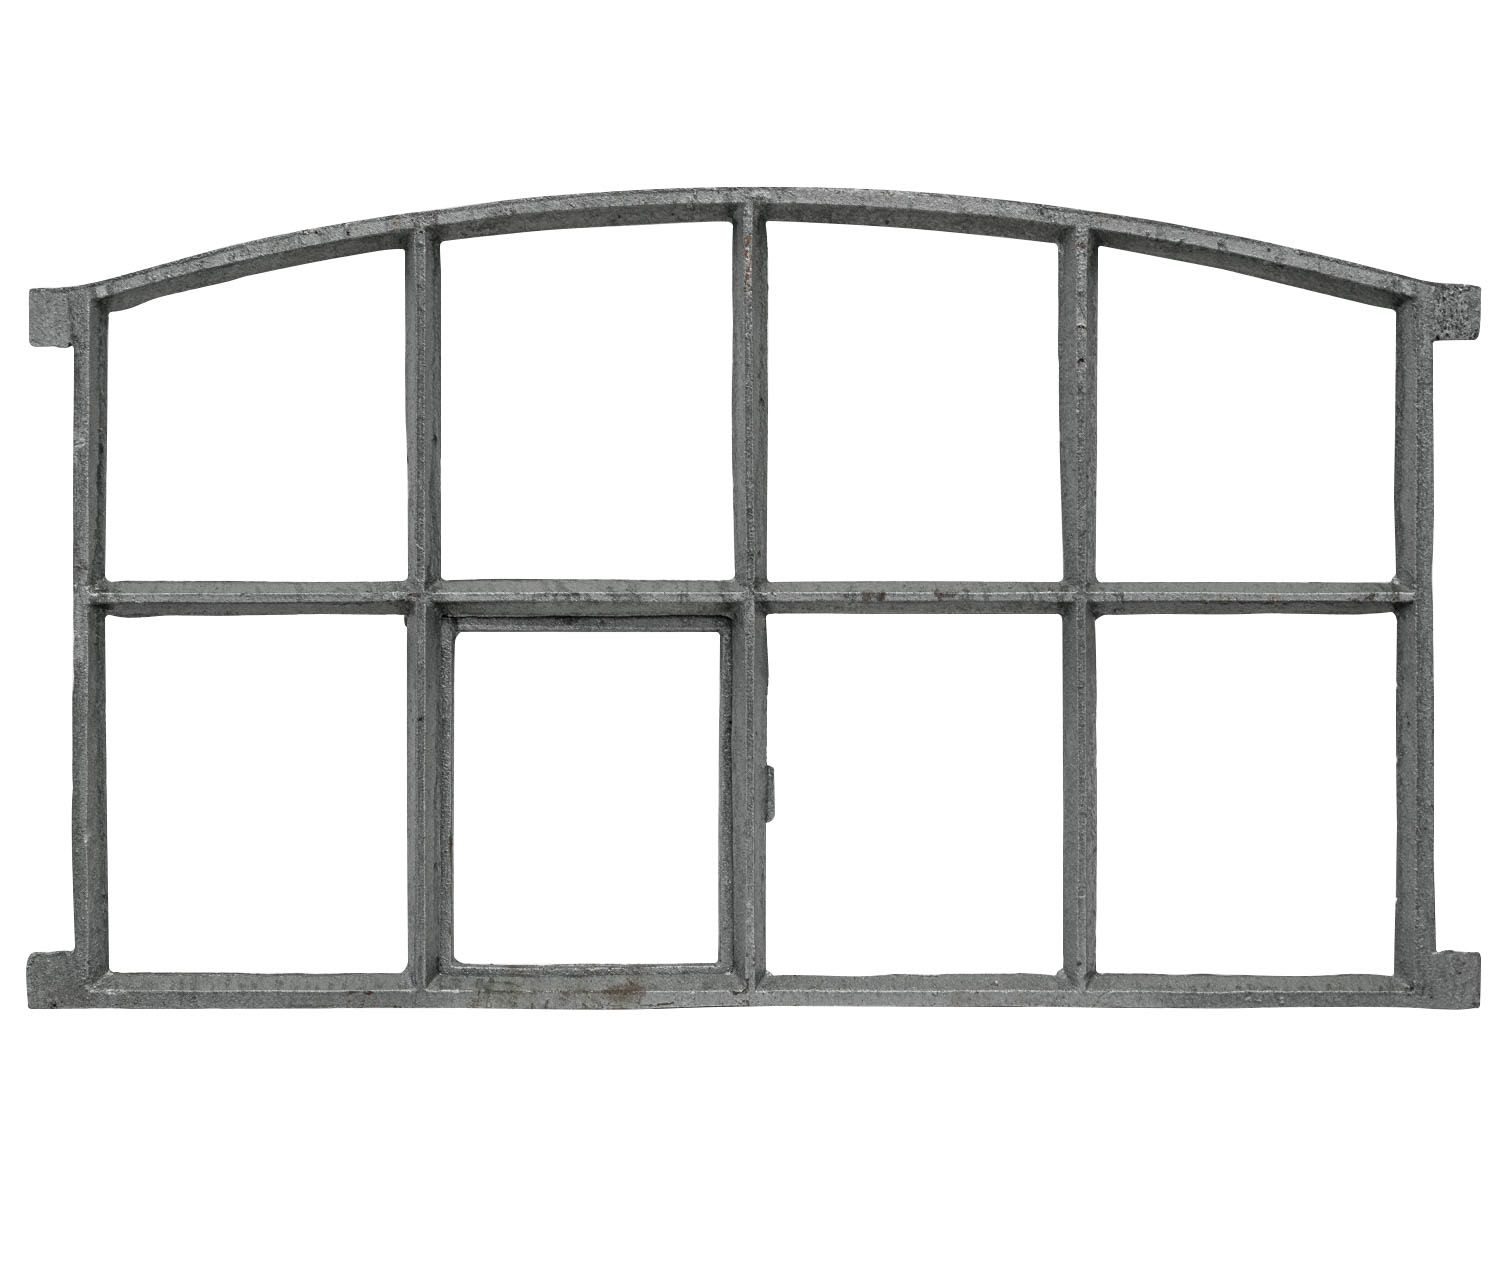 Stallfenster Fenster zum öffnen Scheunenfenster Eisen 51x42cm im Antik-Stil 